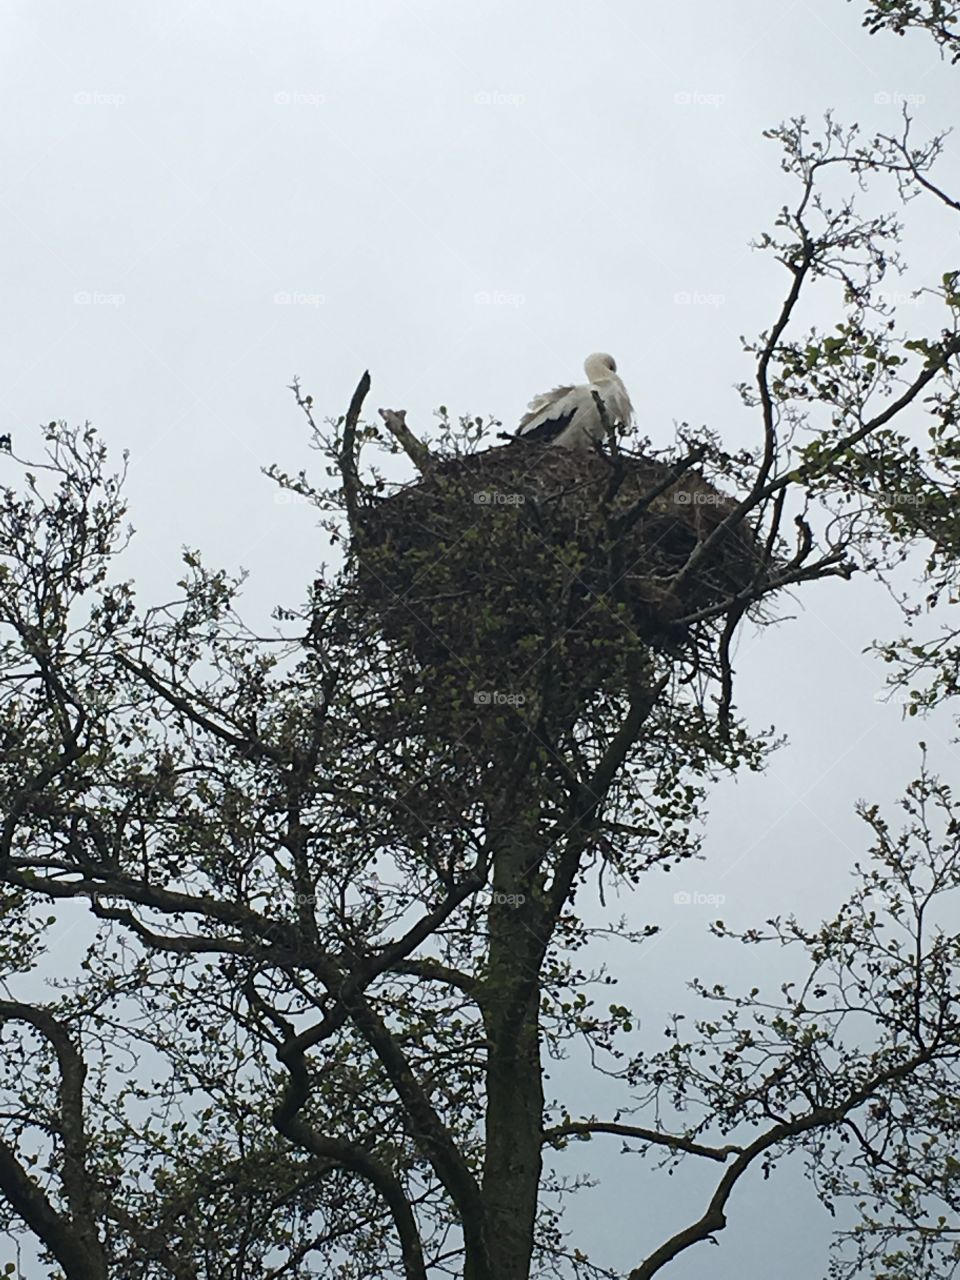 Stork nest 